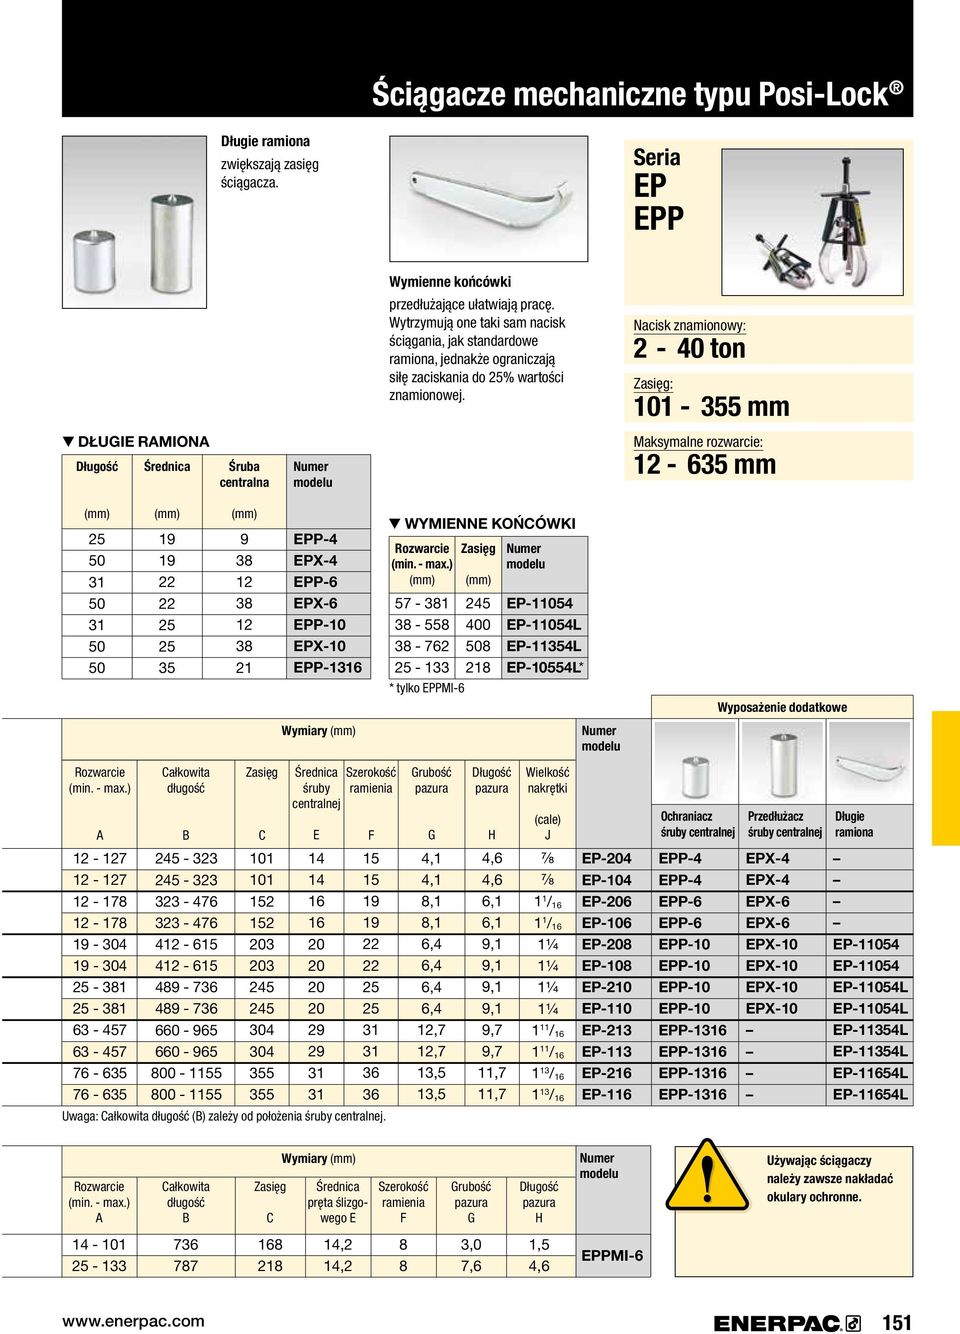 Nacisk znamionowy: - 40 ton Zasięg: 101-55 mm D ŁUGIE RAMIONA Śruba centralna Maksymalne rozwarcie: 1-65 mm 5 1 1 19 19 5 5 5 9 8 1 8 1 8 1 EPP-4 EPX-4 EPP-6 EPX-6 EPP-10 EPX-10 EPP-116 WYMIENNE